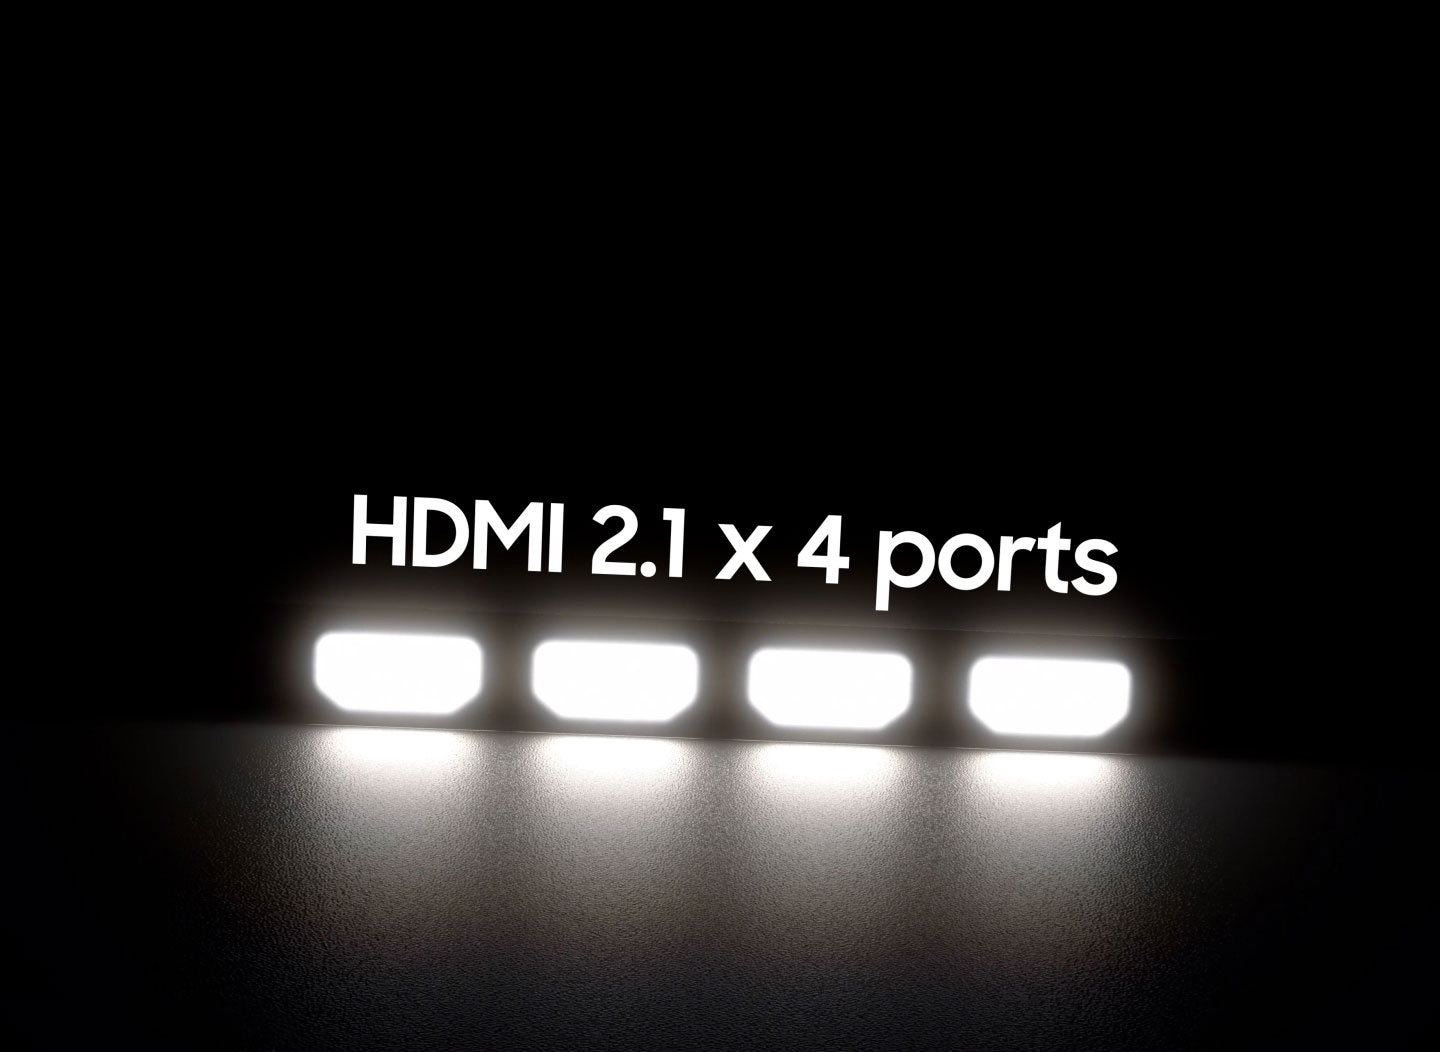 Ein Gaming-TV erscheint auf einem Tisch. Seine vier HDMI 2.1-Anschlüsse leuchten auf. Vier Spielgeräte sind über HDMI mit dem Gaming-Fernseher verbunden. Alle Geräte spielen ein Rennspiel auf dem Gaming-Fernseher. 